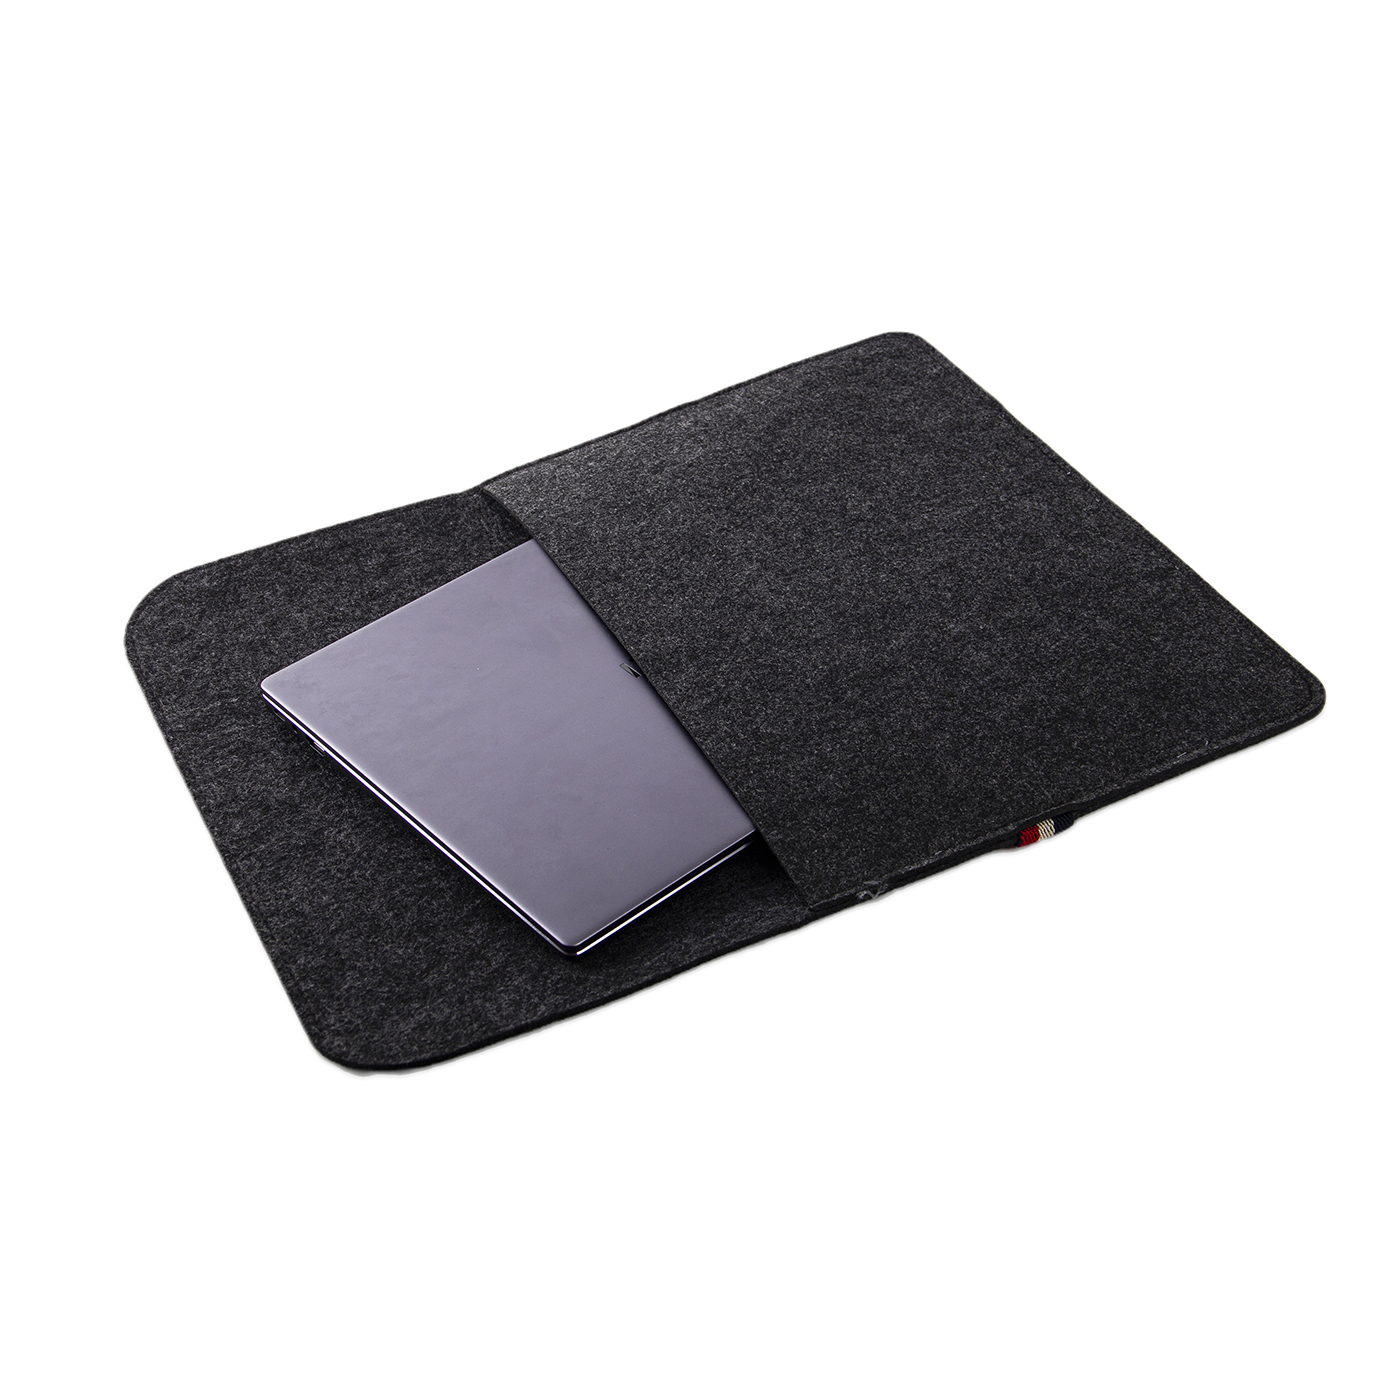 Felt Laptop Sleeve Case With Elastic Band2